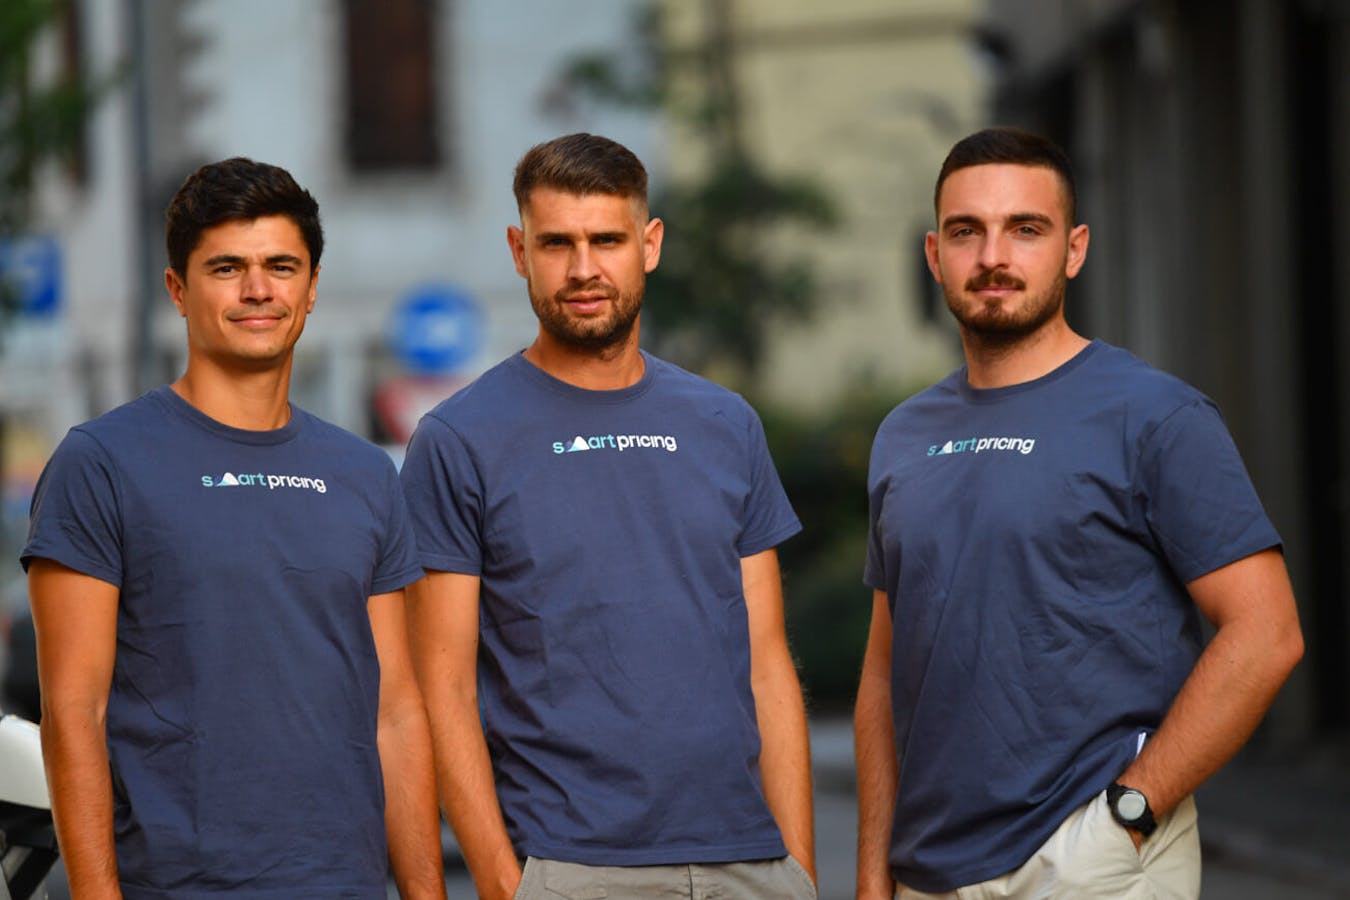 Fondatori Smartpricing Luca Rodella, Tommaso Centonze e Eugenio Bancaro